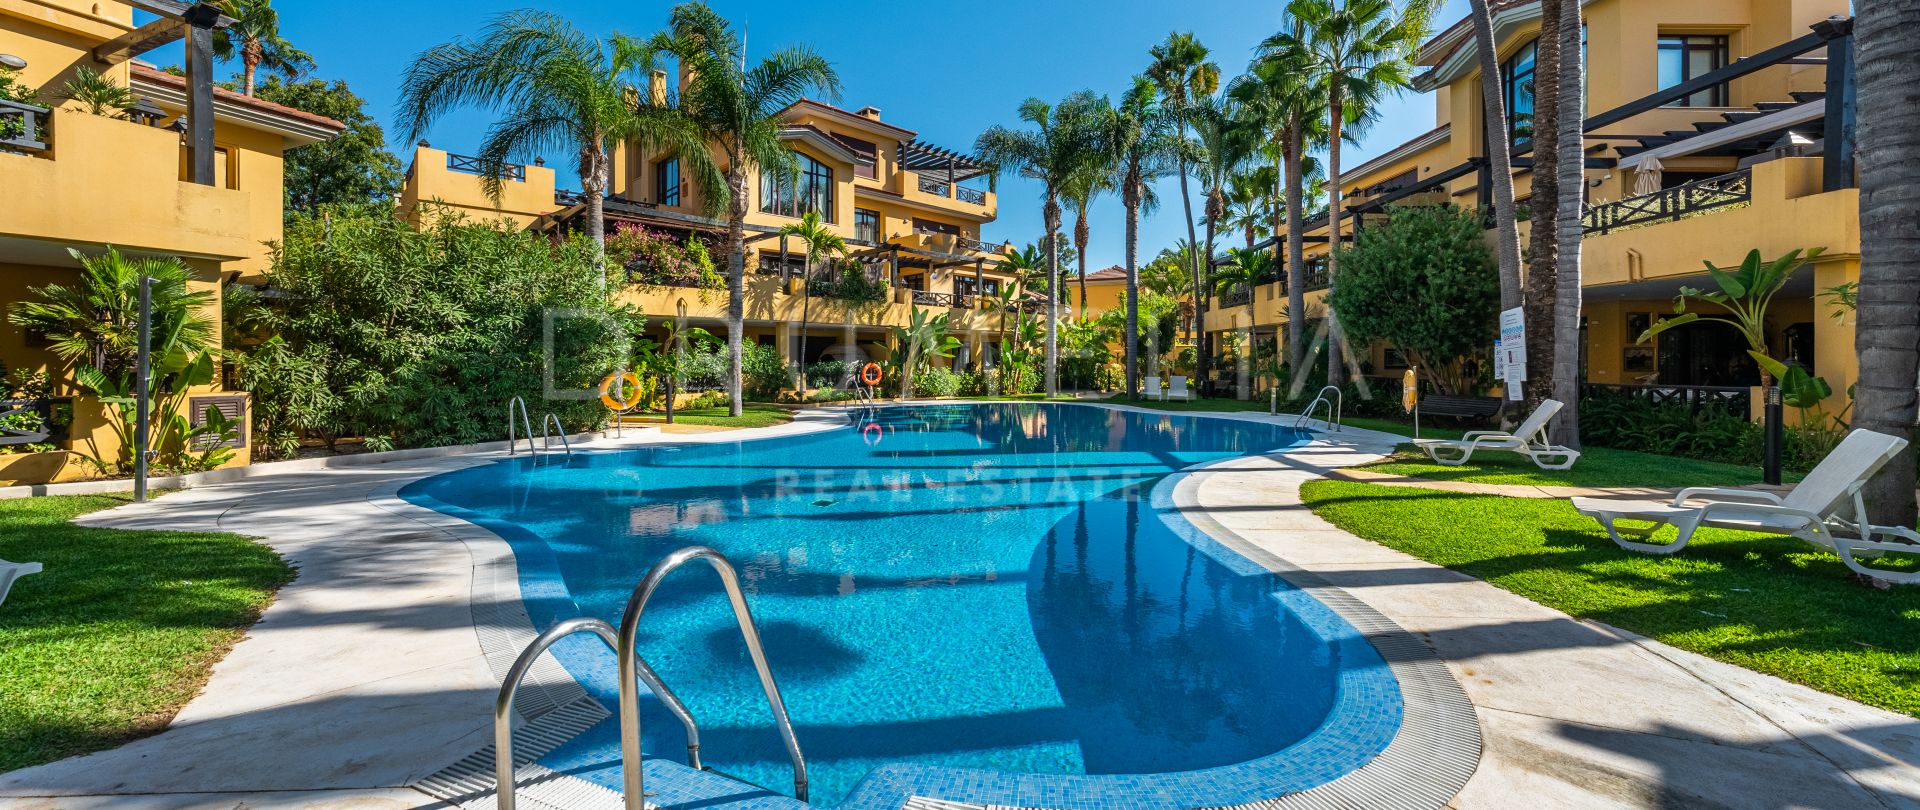 Prachtig luxe appartement te koop in Bahia de Banus, Puerto Banus, Marbella.